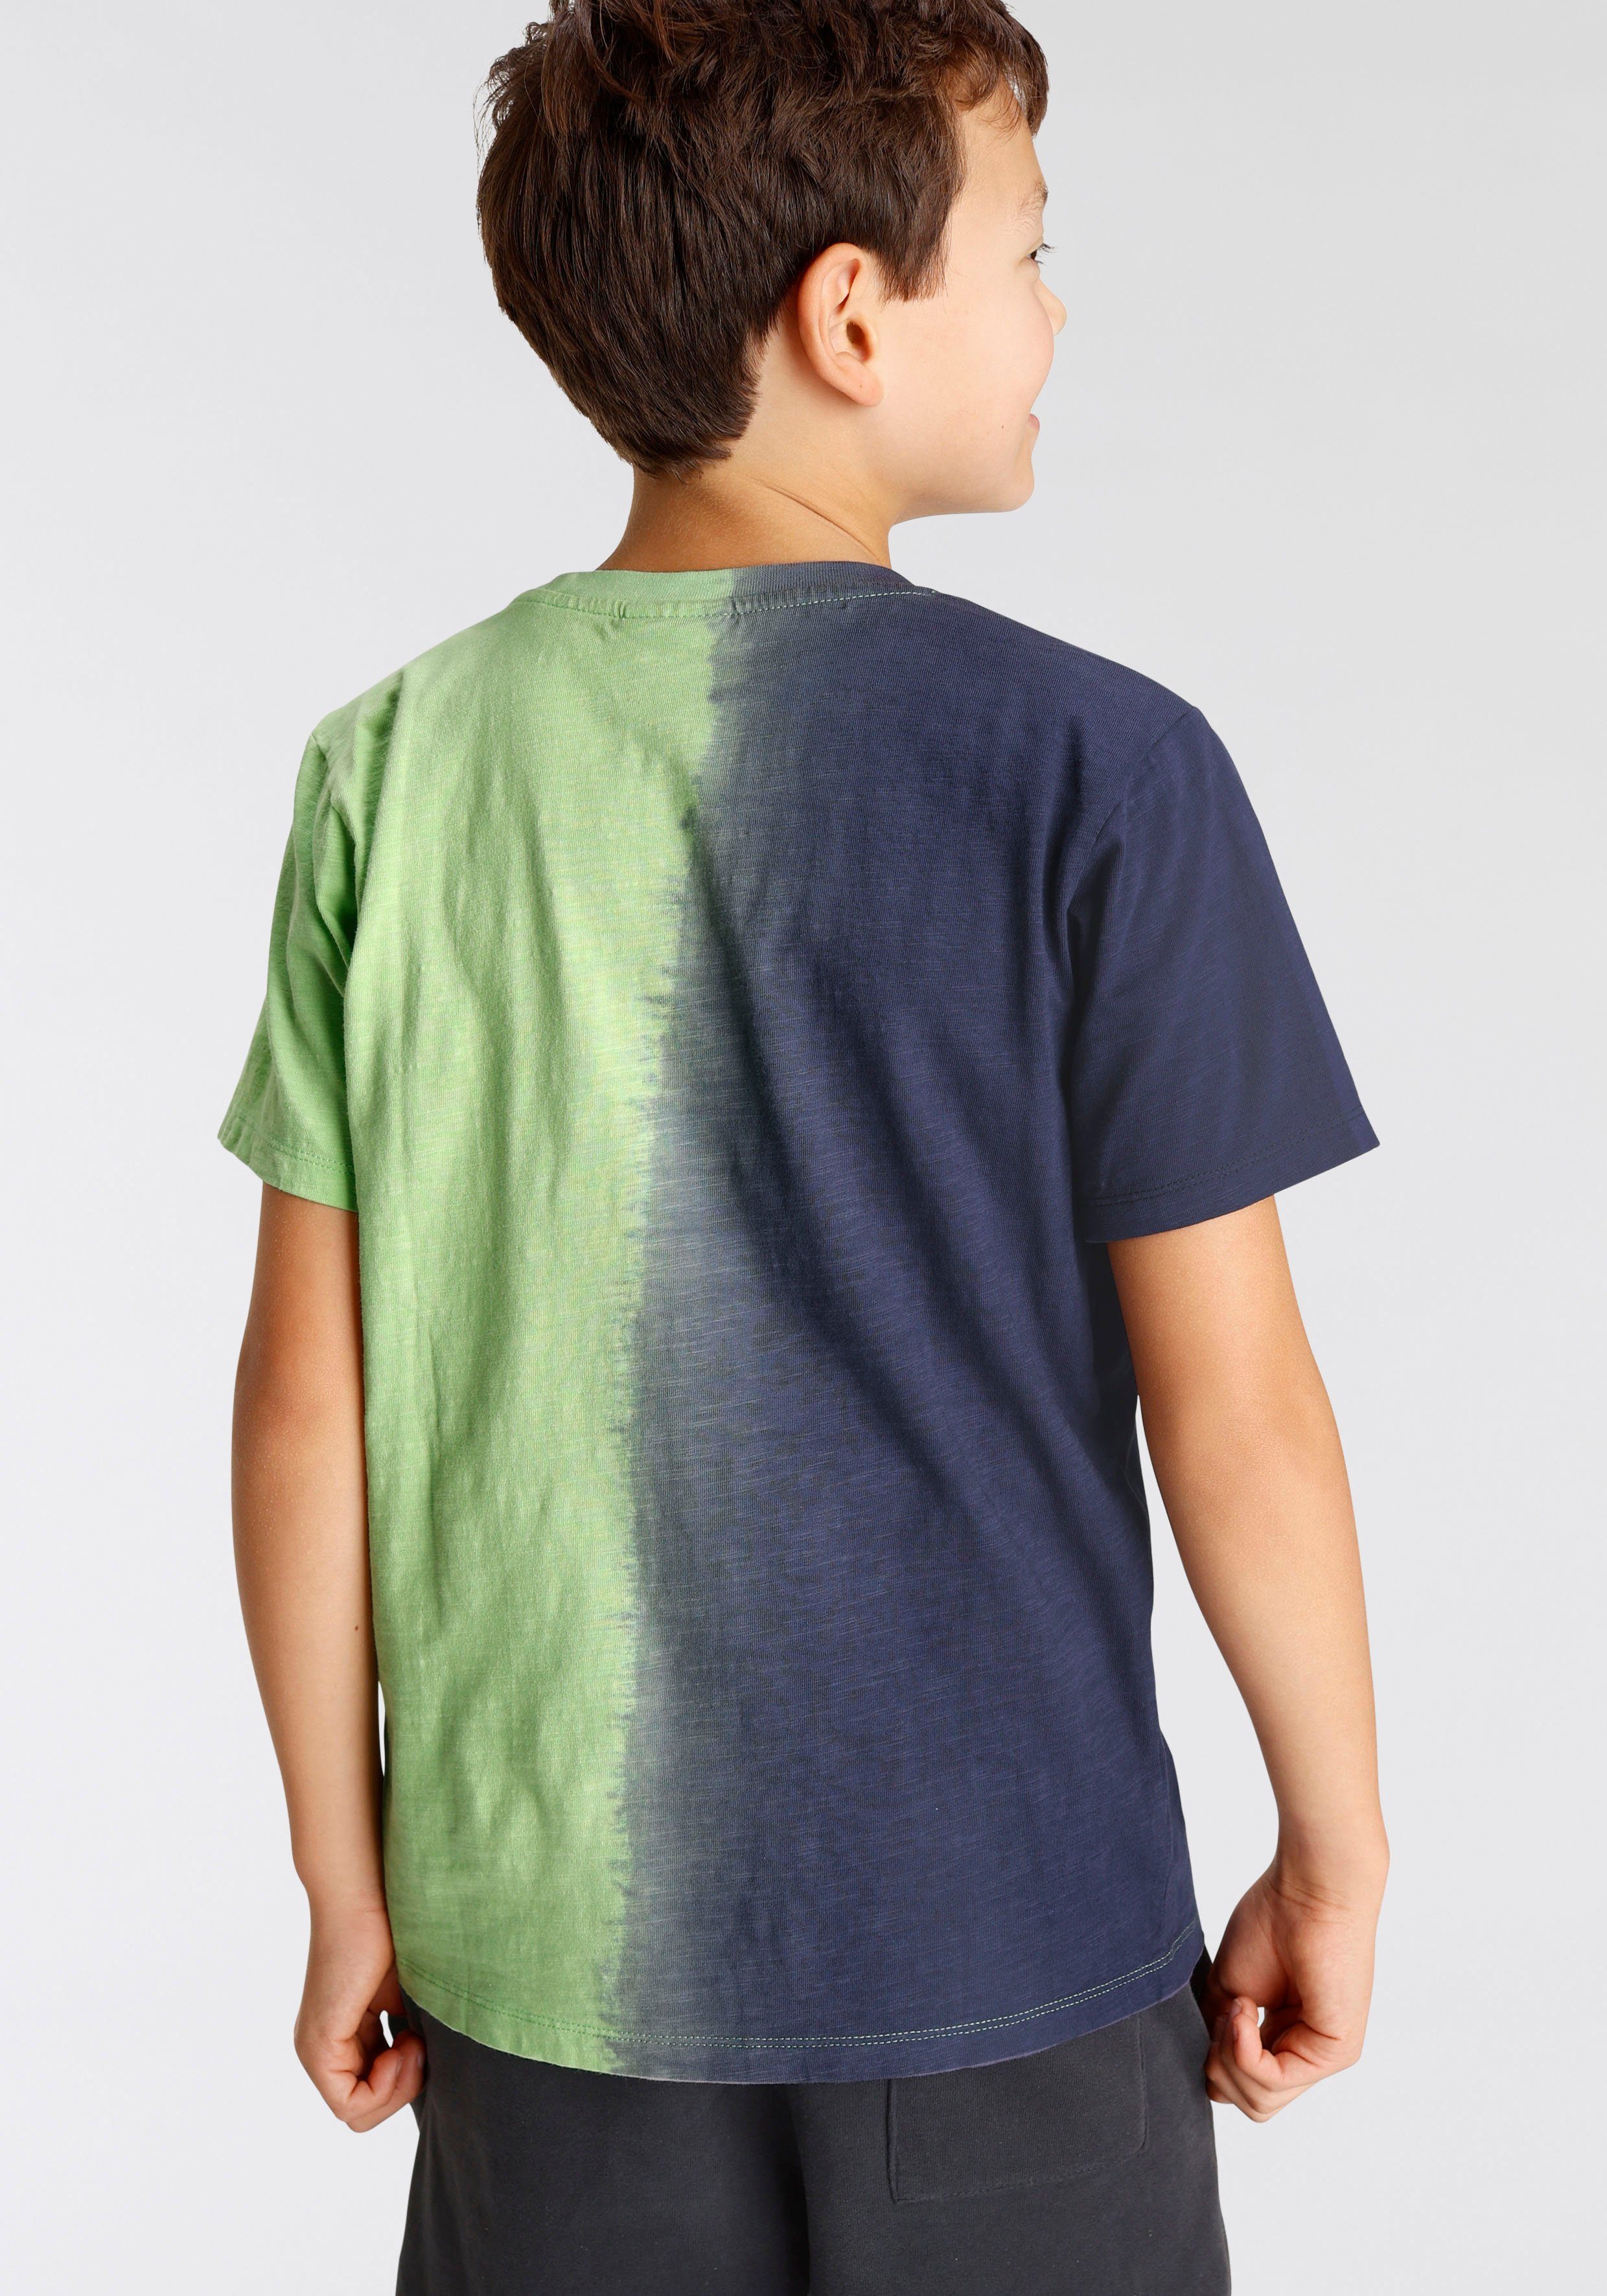 Farbverlauf mit Farbverlauf vertikalem Chiemsee T-Shirt